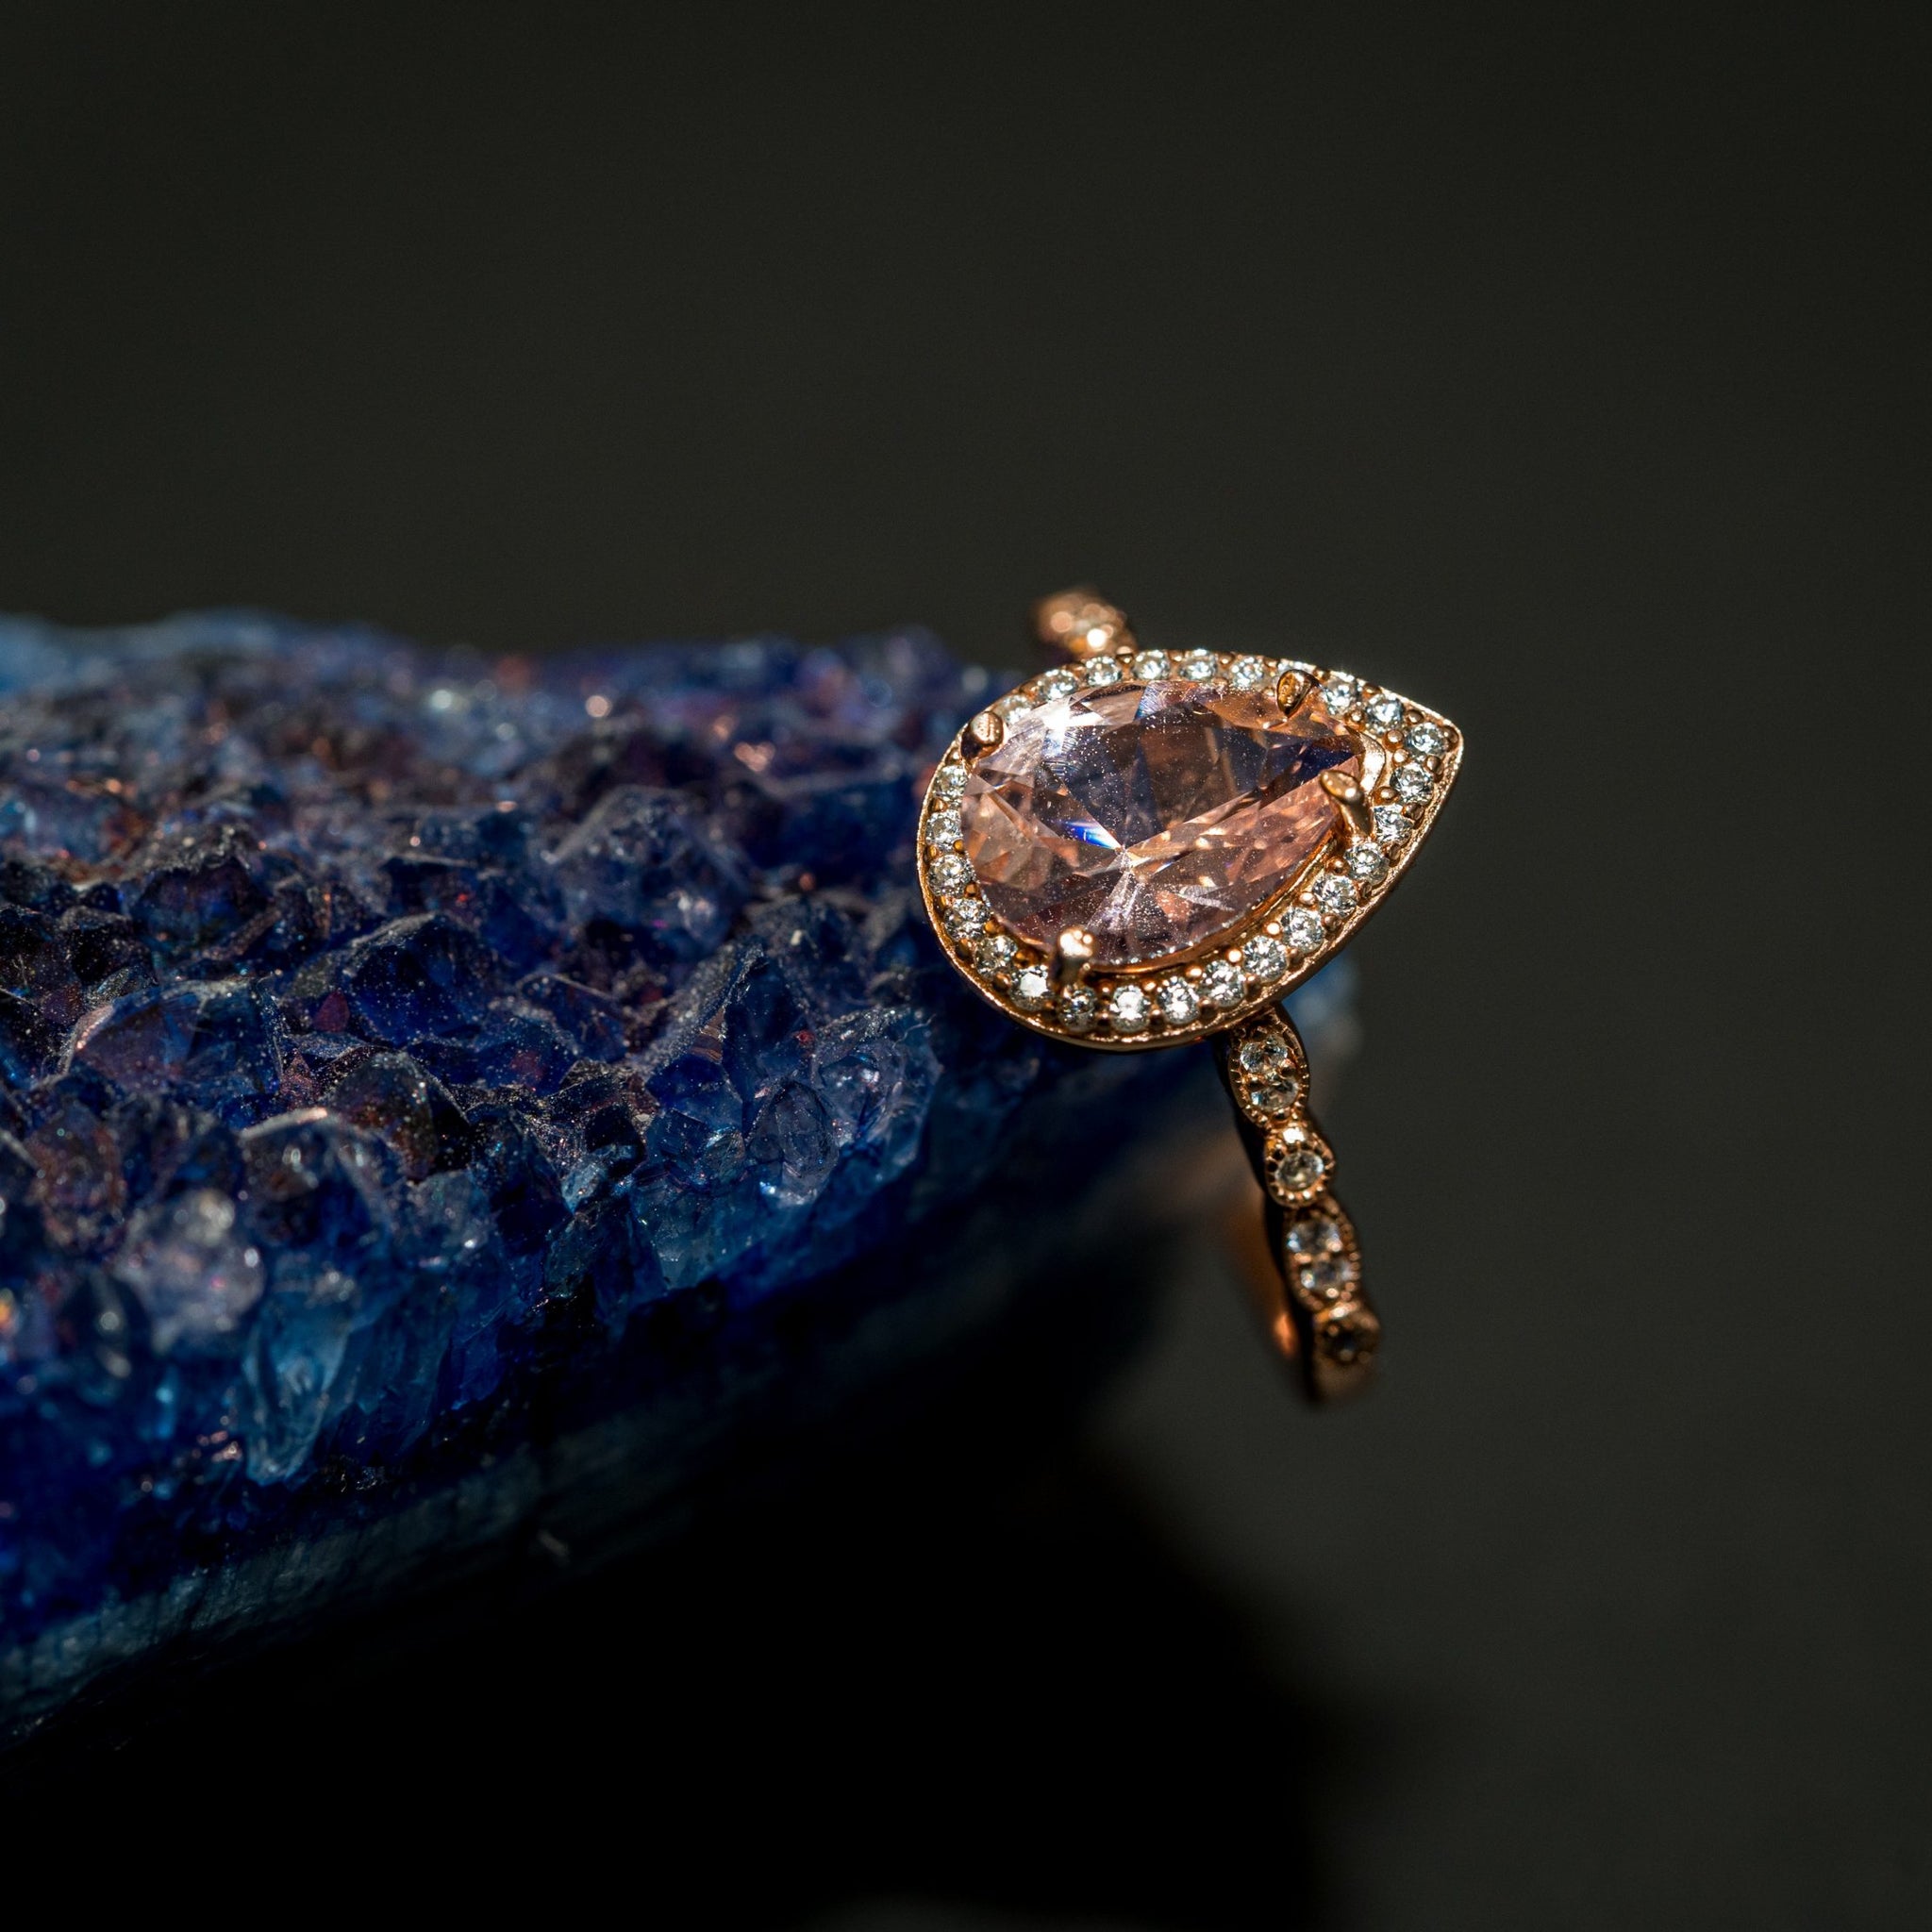 Las piedras preciosas más utilizadas en joyería: Rubí, Zafiro y Esmeralda